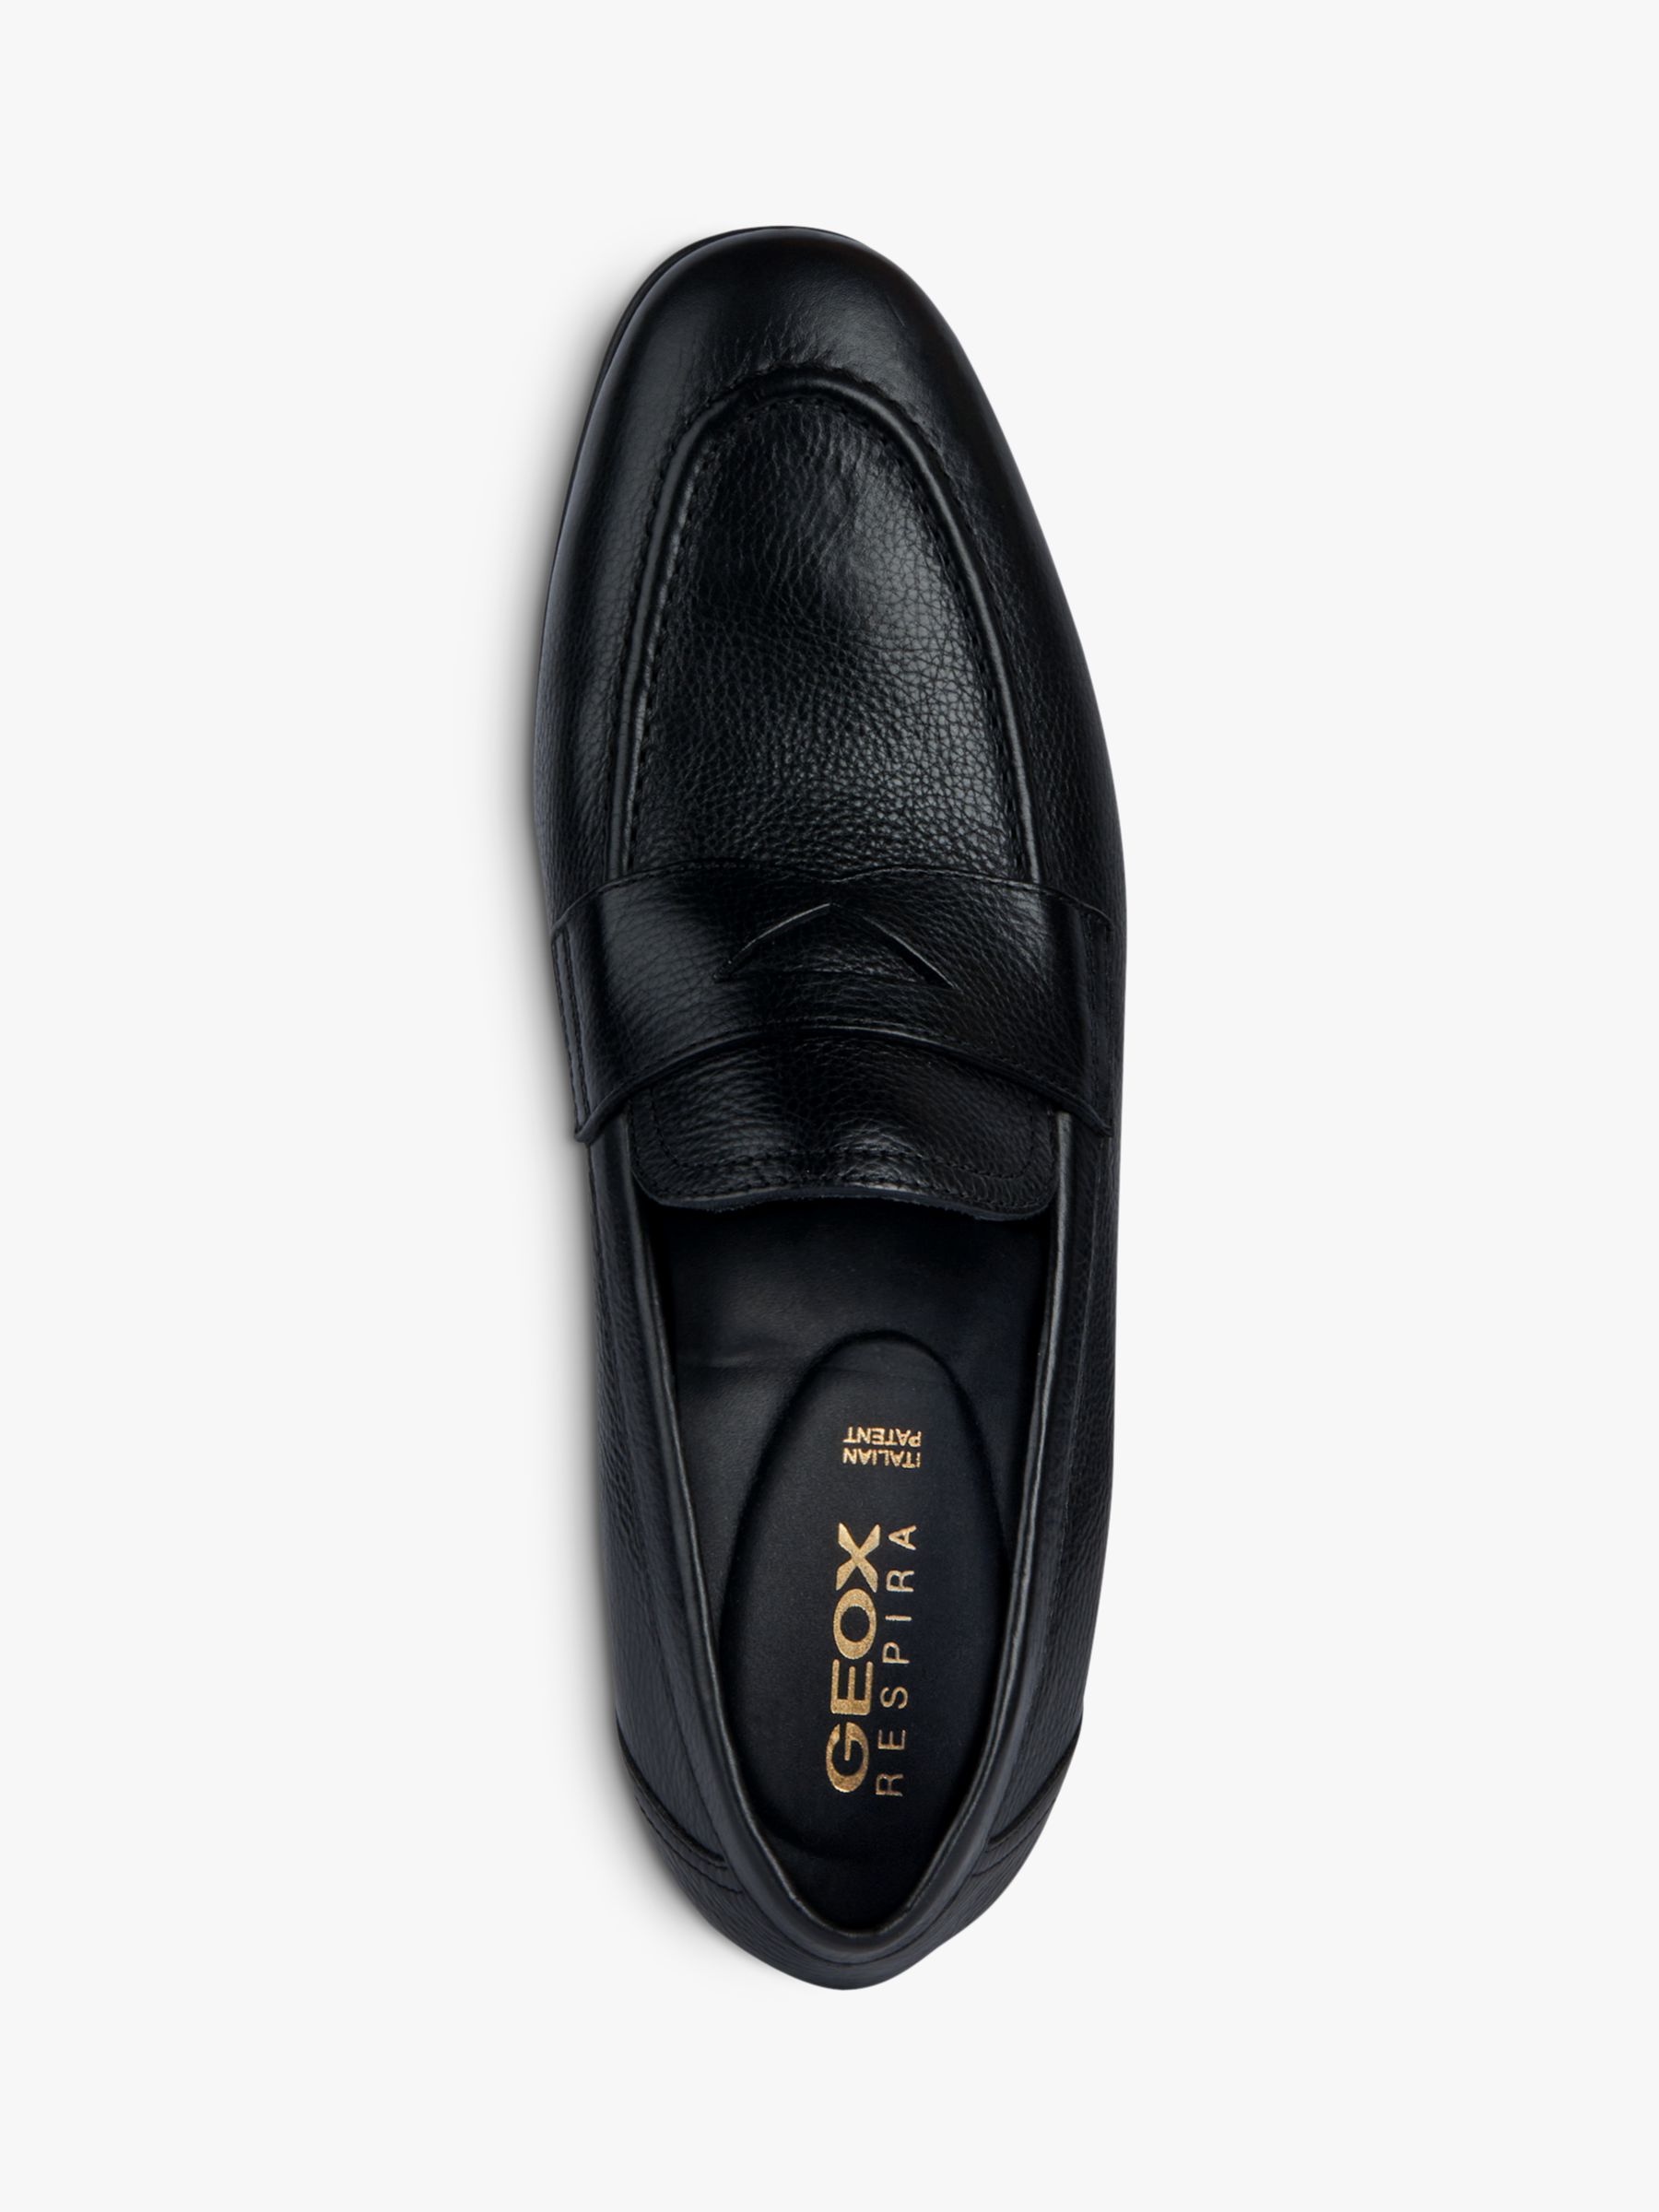 Geox Sapienza Classic Loafers, Black, EU39